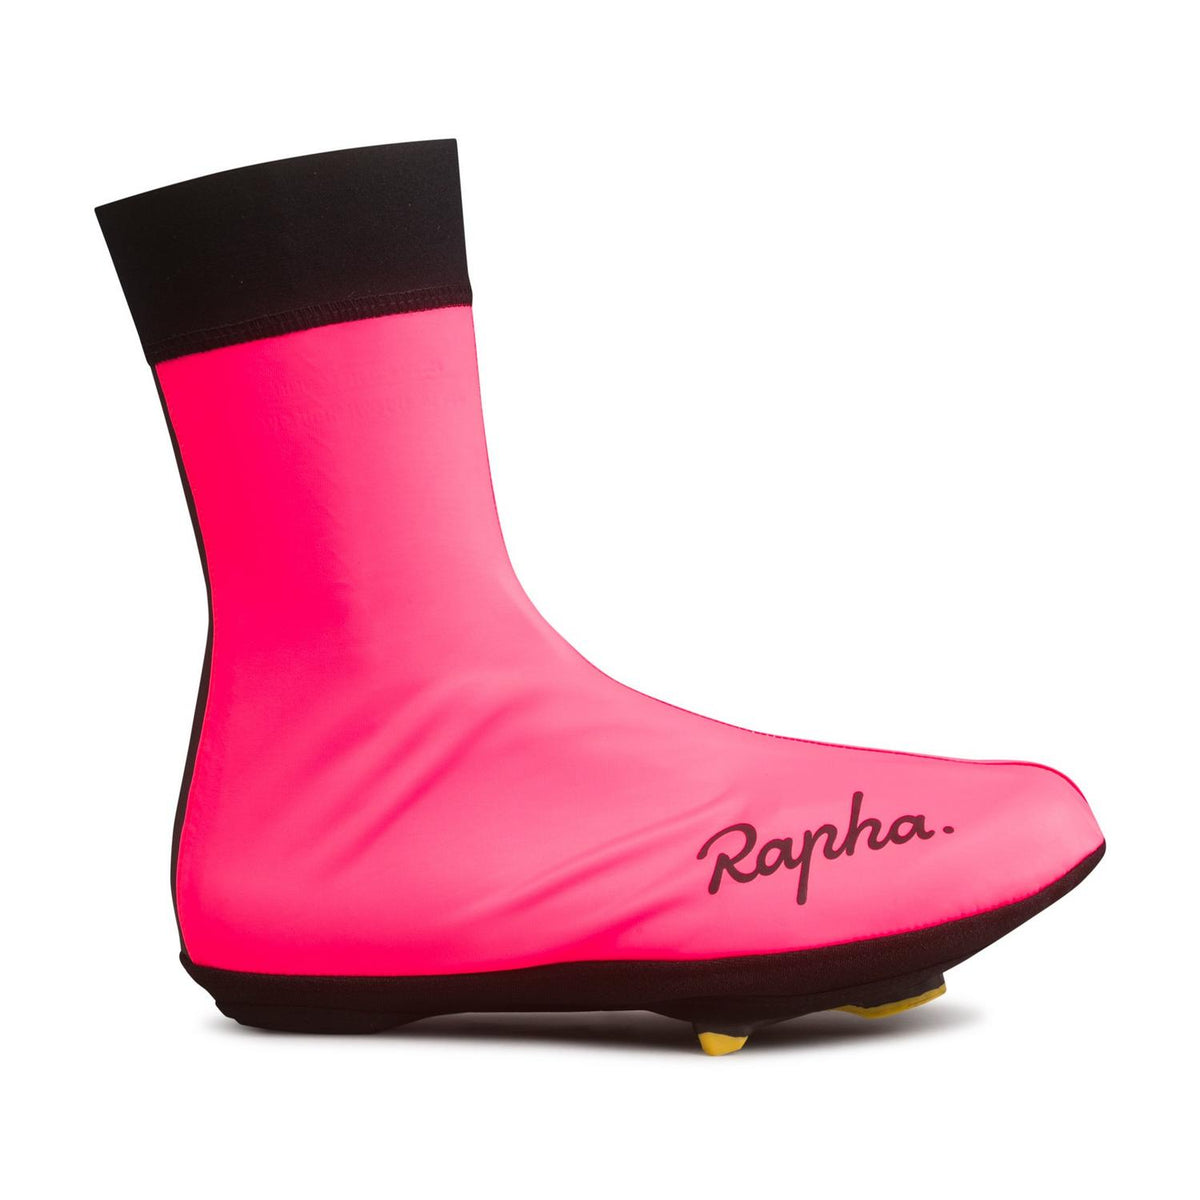 Rapha Wet Weather Overshoes